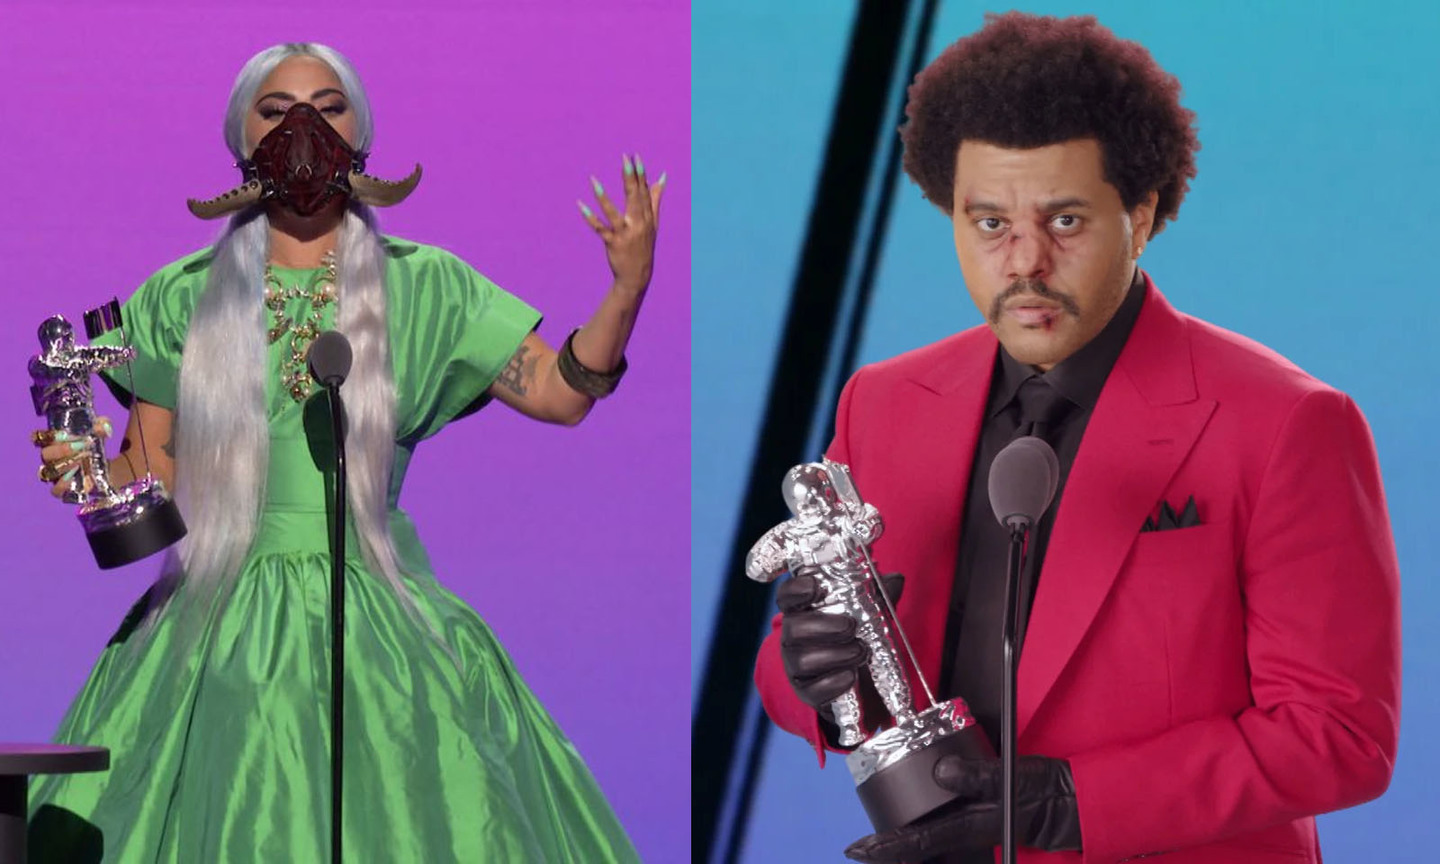 Descrição: Do lado esquerdo, a cantora Lady Gaga - aparece com um vestido verde de tafetá de seda, máscara exótica vermelha queimada/preta com dois chifres, com o cabelo platinado, longo e praticamente liso, ela também tem como acessórios: diversos anéis dourados, um bracelete no braço esquerdo e colares dourados - segurando com a mão direita um dos seus 5 prêmios no VMA 2020. Do lado direito, o cantor The Weeknd usando blazer vermelho, camisa, gravata e luvas pretas; cabelo crespo com penteado black, rosto maquiado com alguns ferimentos na área da boca e nariz. Ele segura o prêmio do VMA com as duas mãos pendendo para o seu lado direito. 